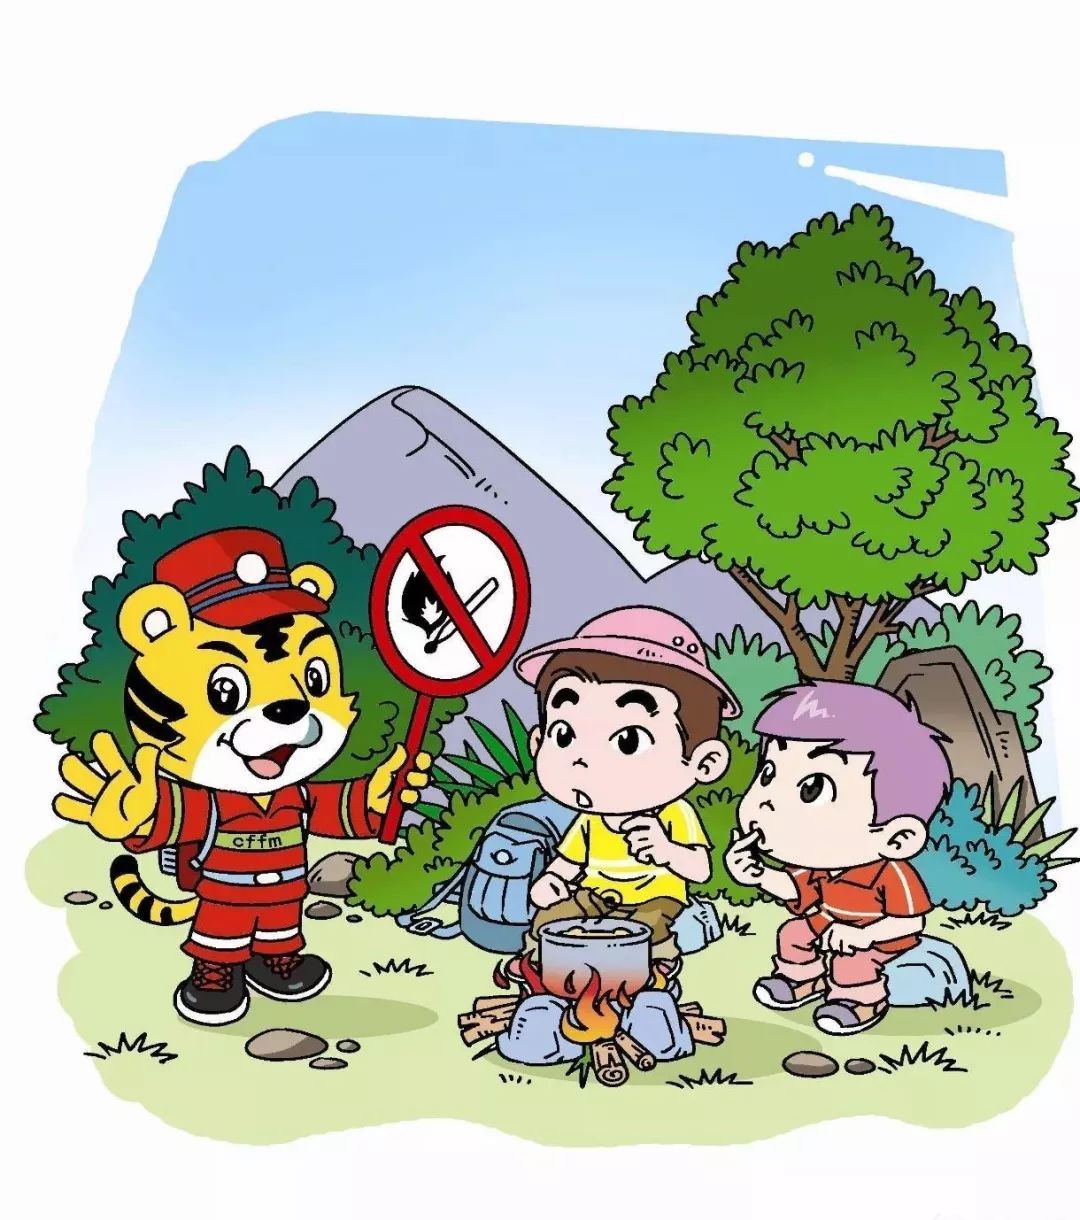 森林防火漫画安全教育图片